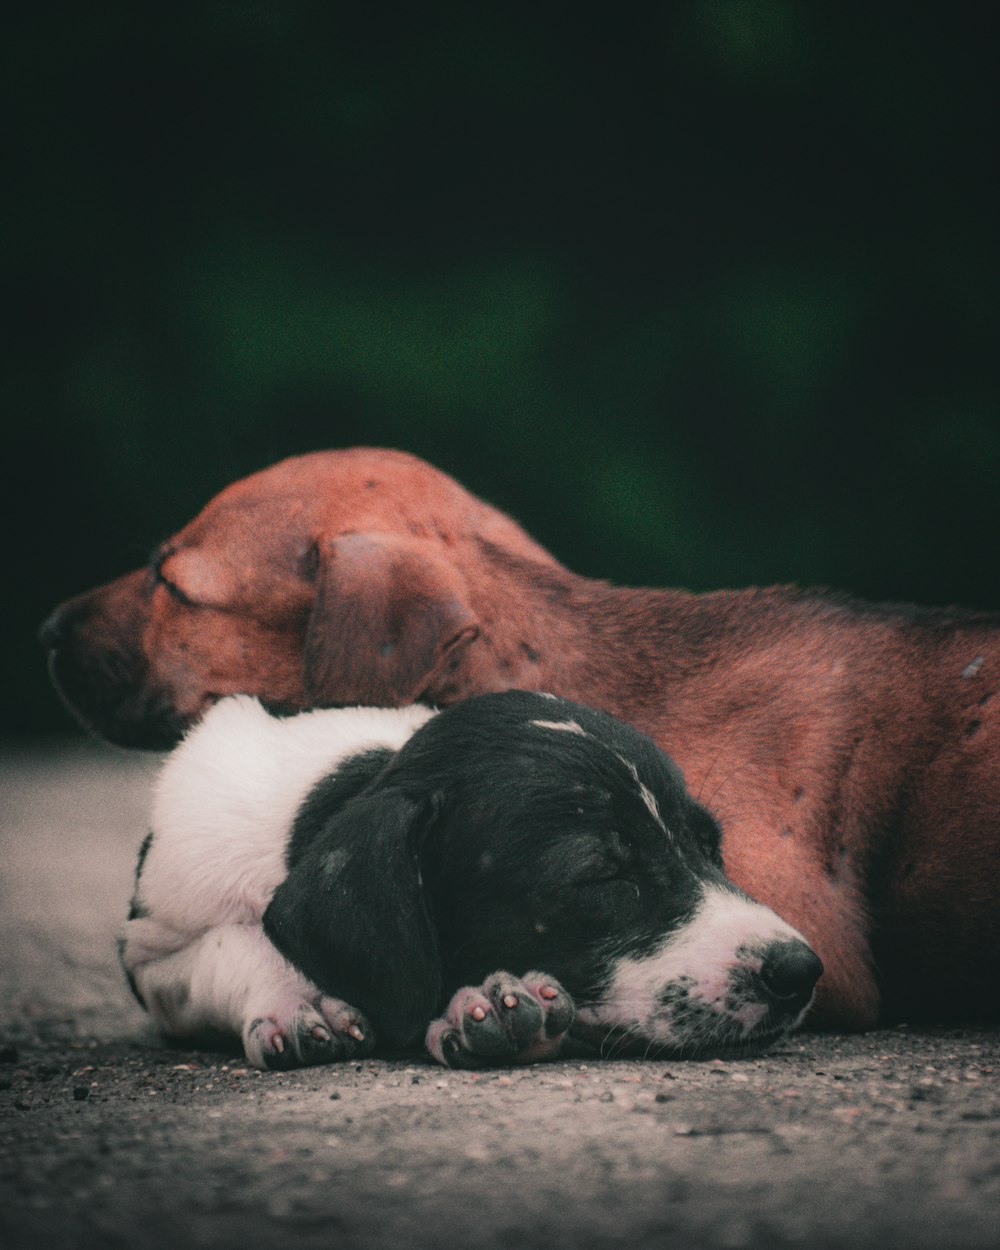 Perro de pelo corto blanco y negro tendido en el suelo junto a un perro marrón de pelaje corto durante el día